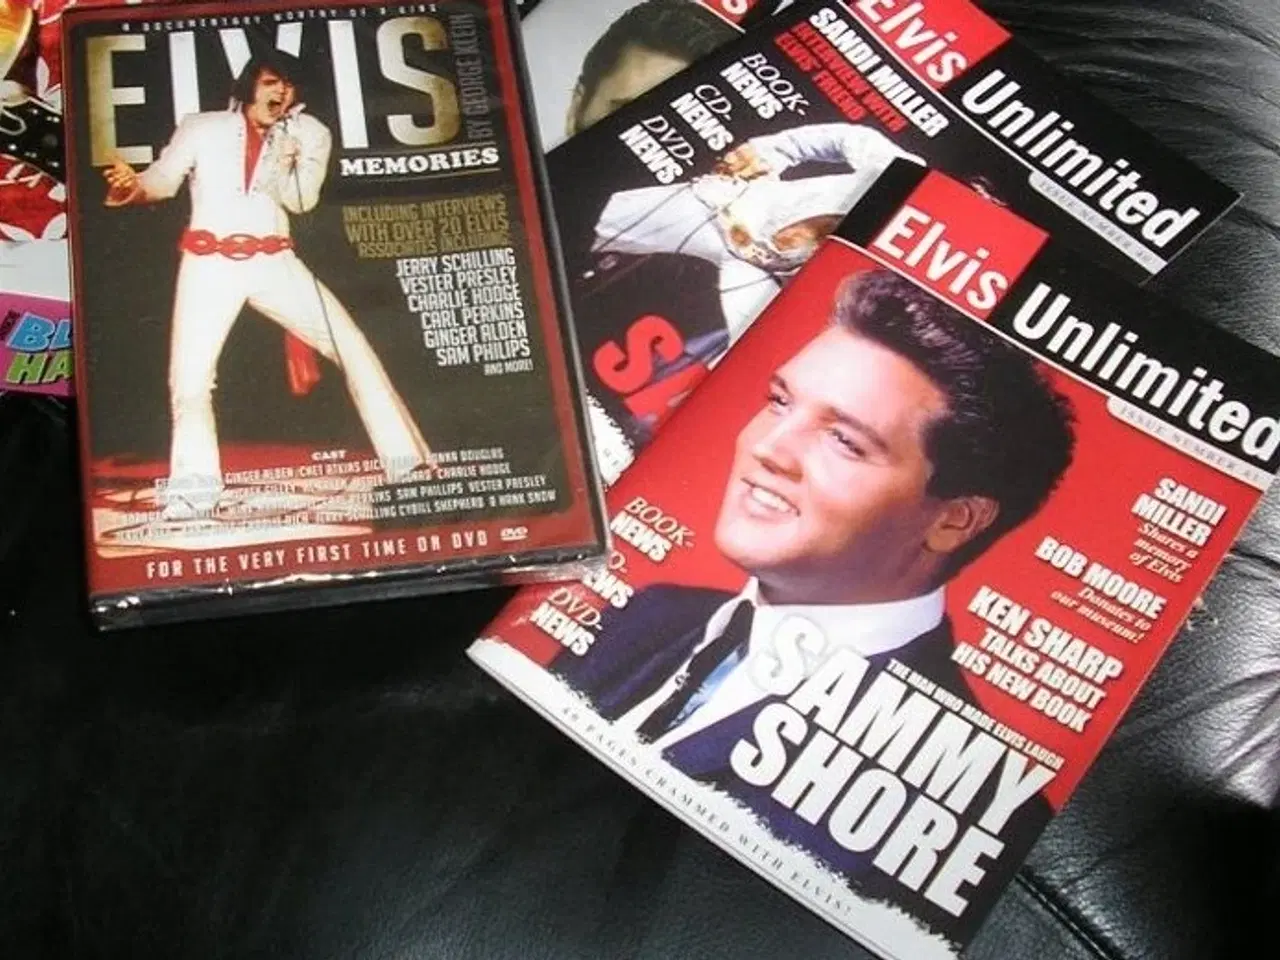 Billede 1 - 1 dvd og 3 blade, alt med Elvis